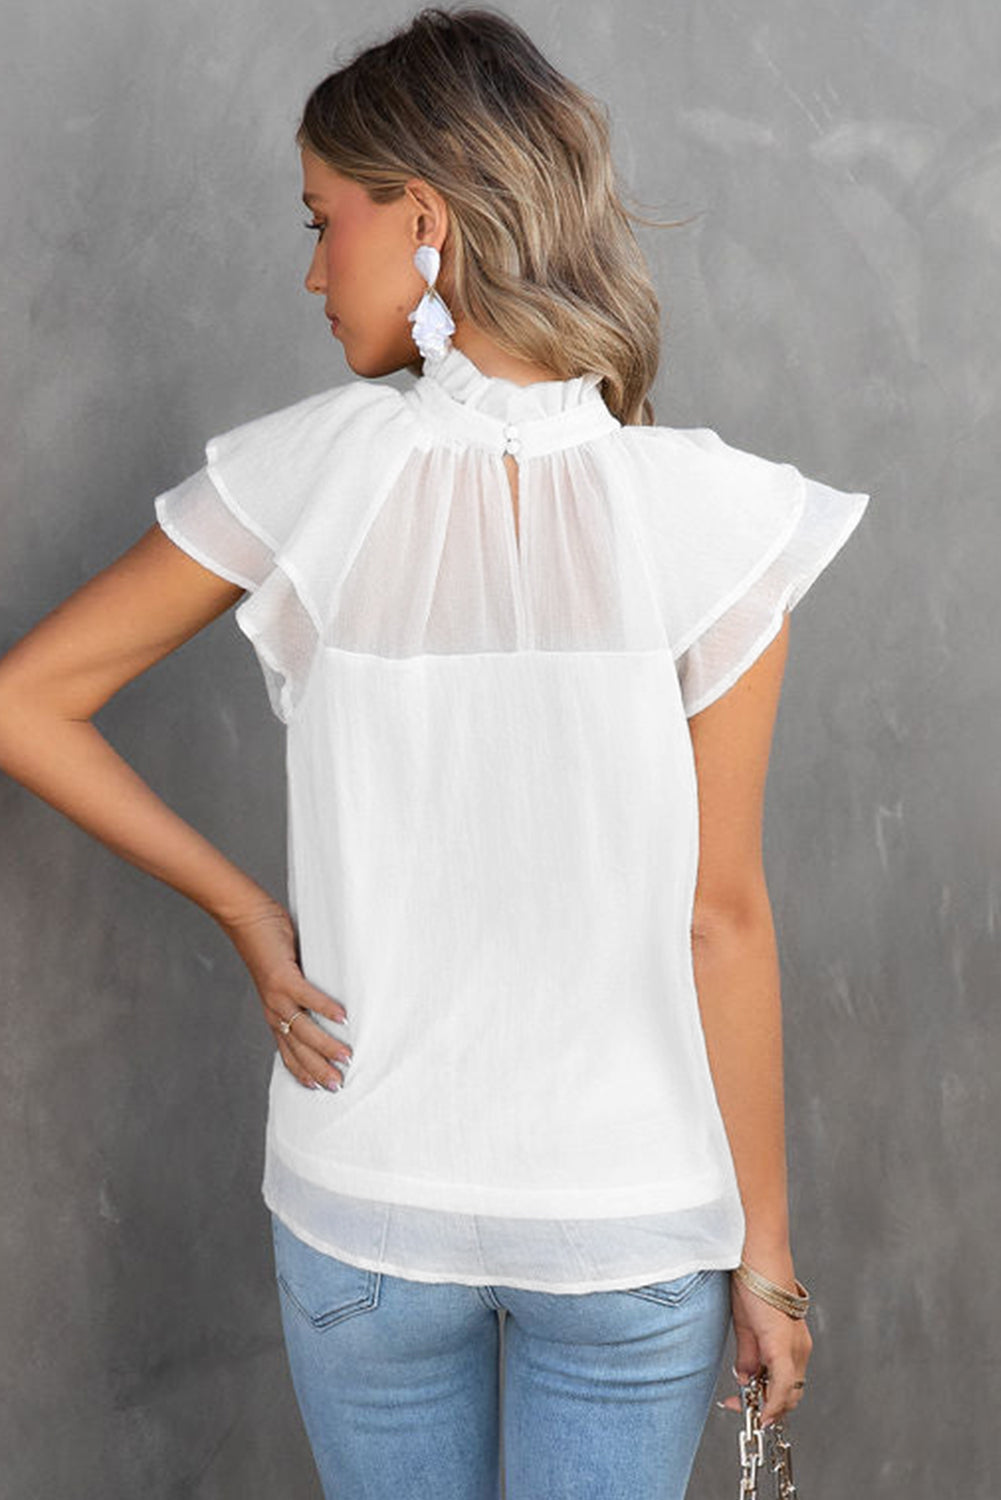 Weiße, transparente Bluse mit gespleißtem Stehkragen und Rüschenärmeln